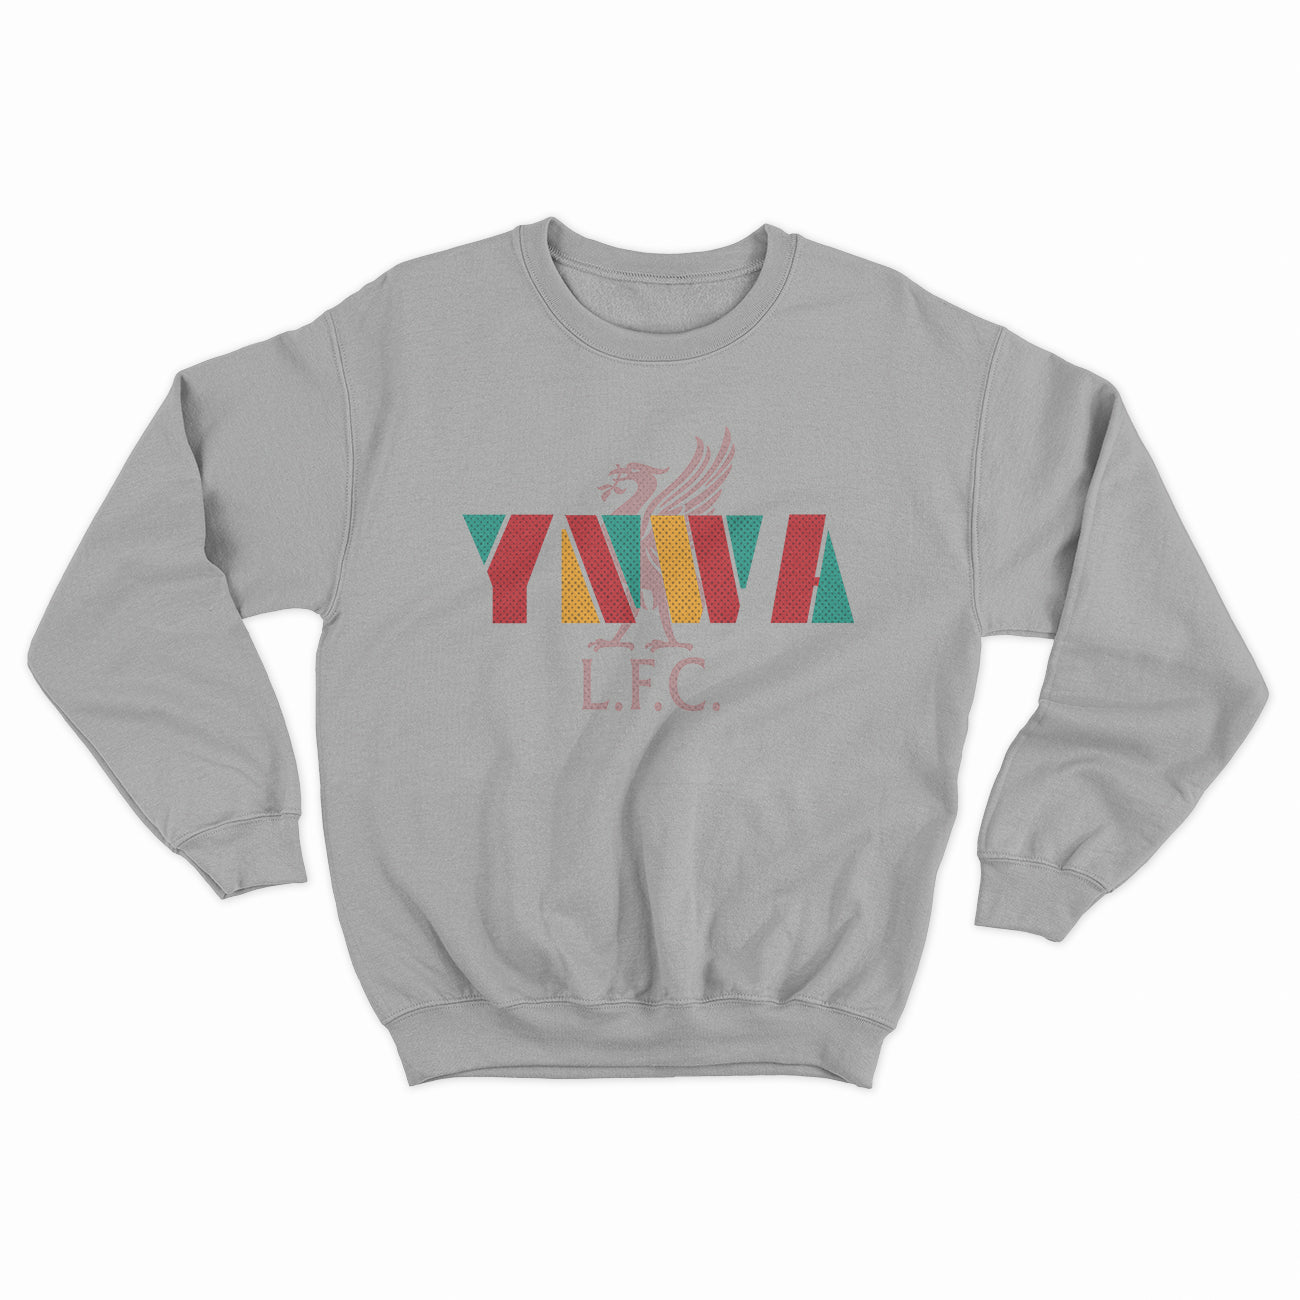 YNWA LFC Sweatshirt